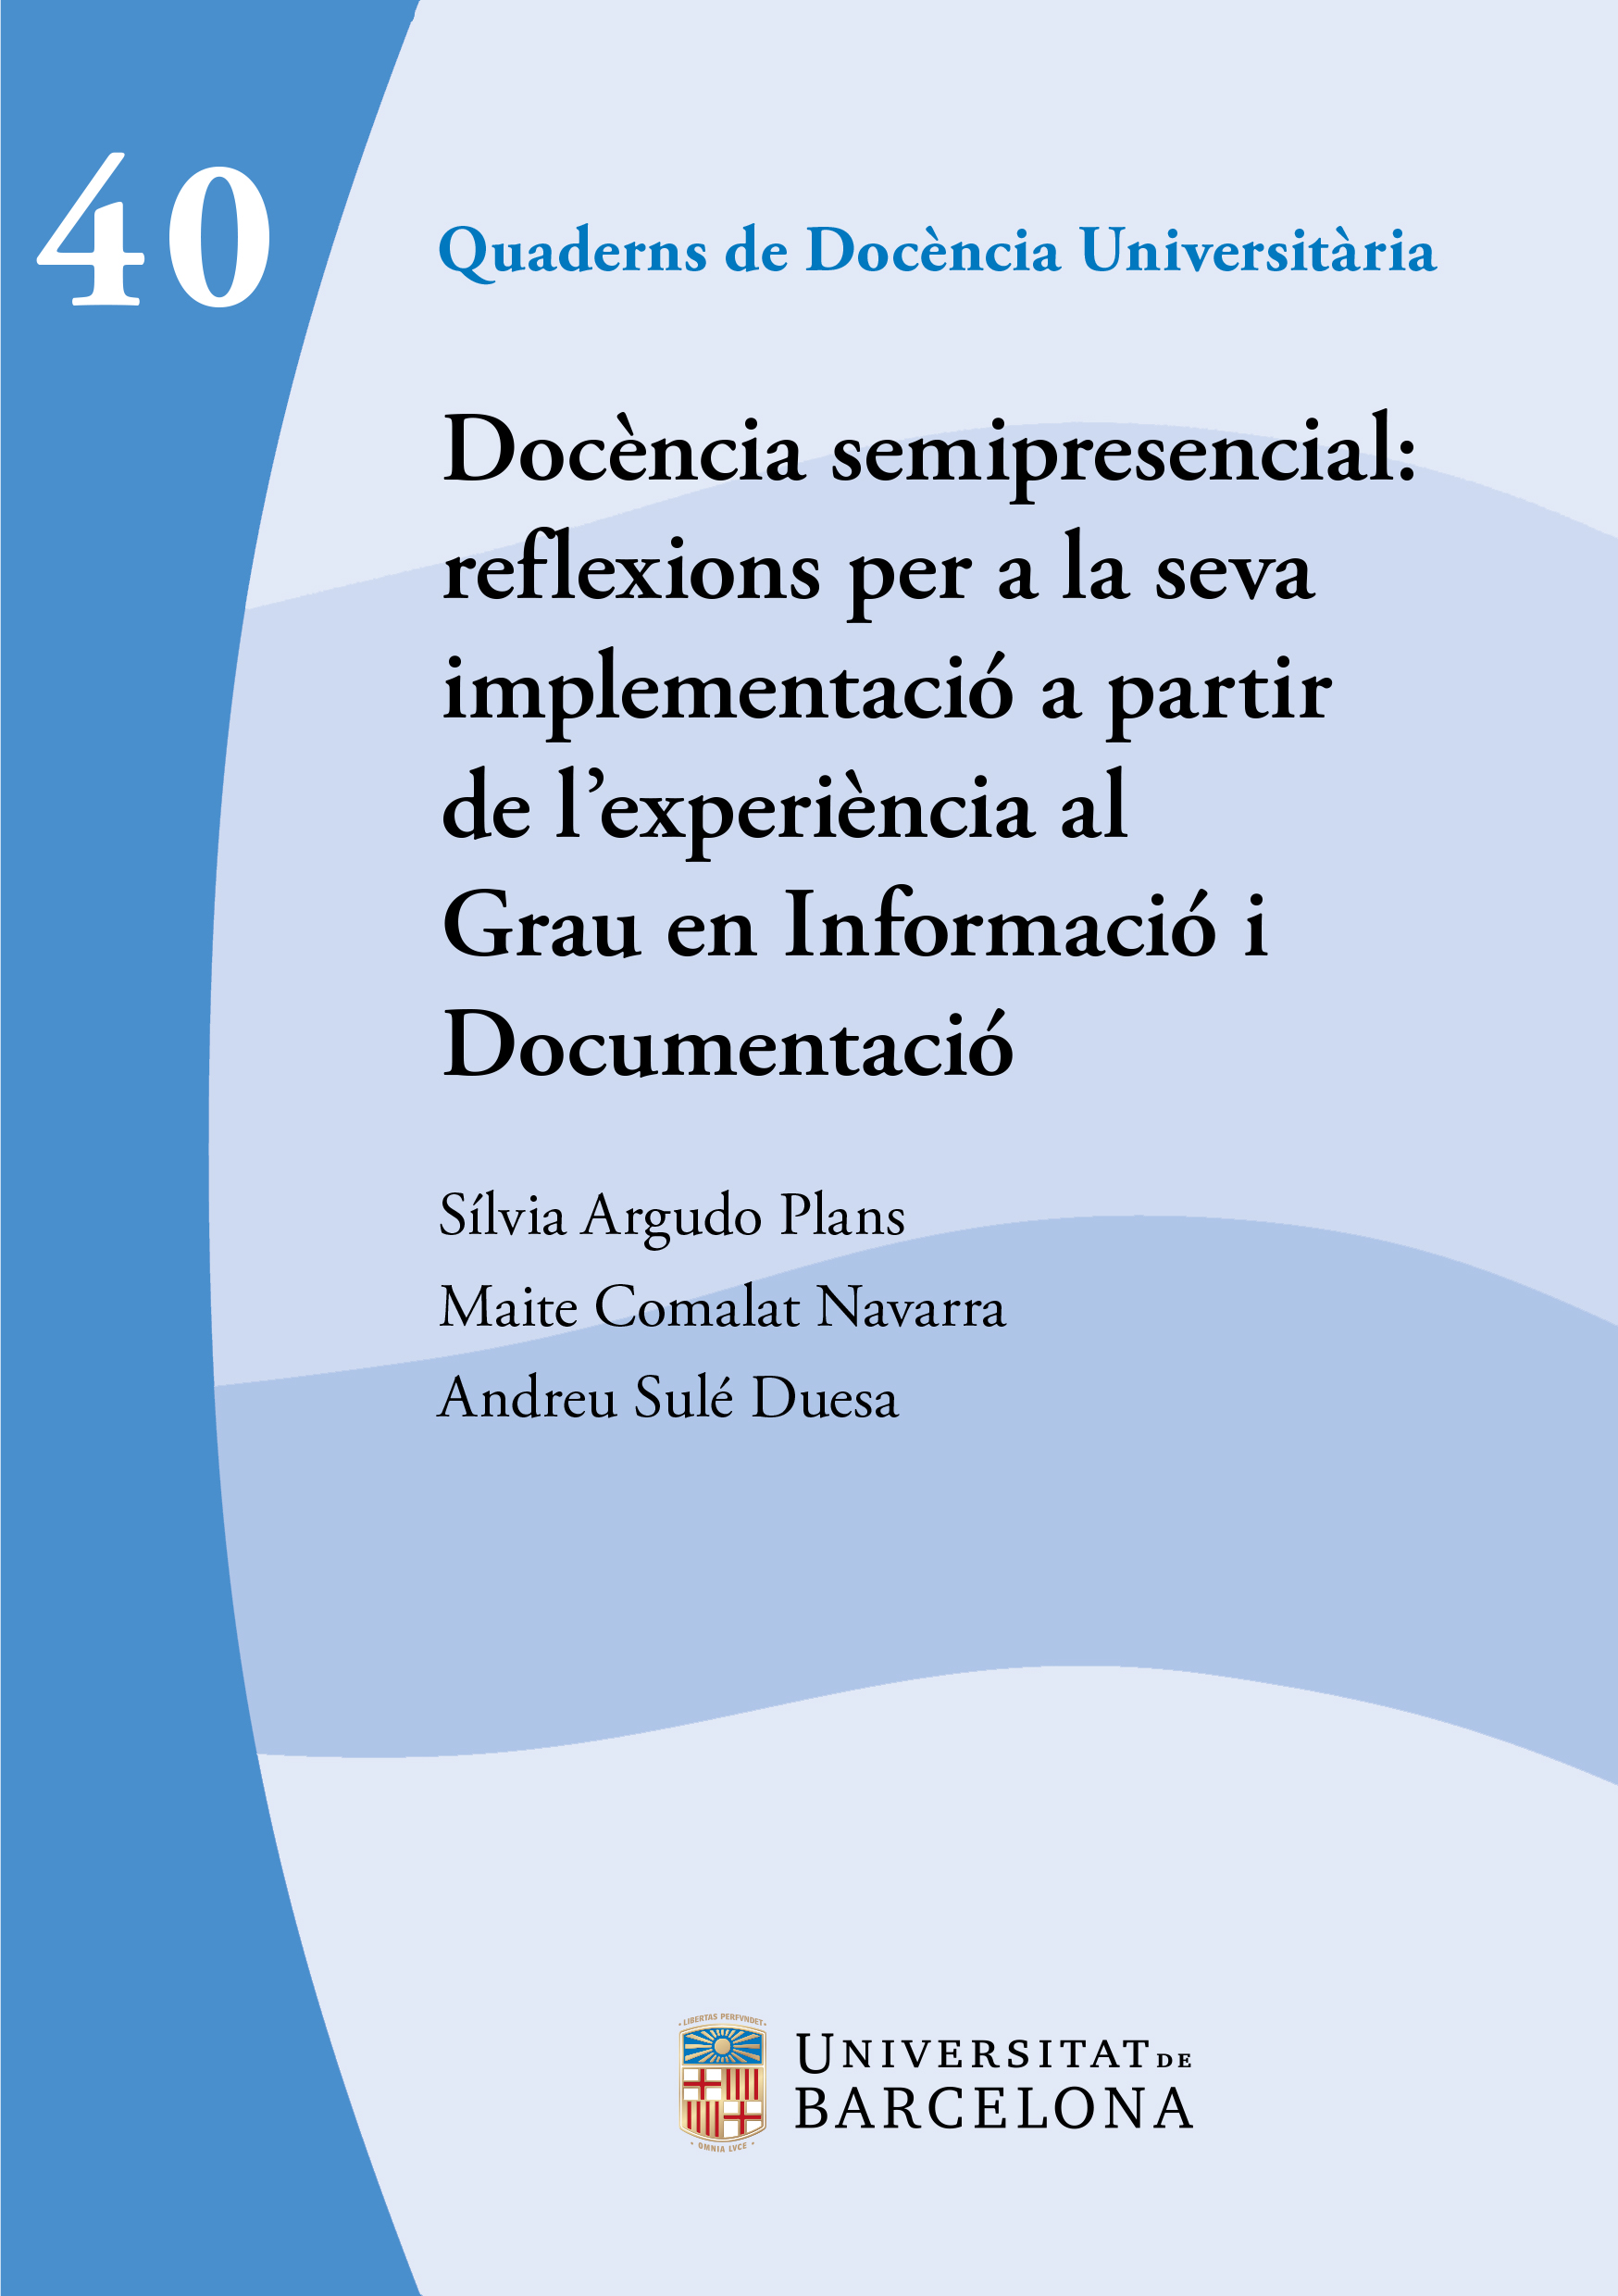 Docència semipresencial: reflexions per a la seva implementació a partir de l’experiència al Grau en Informació i Documentació